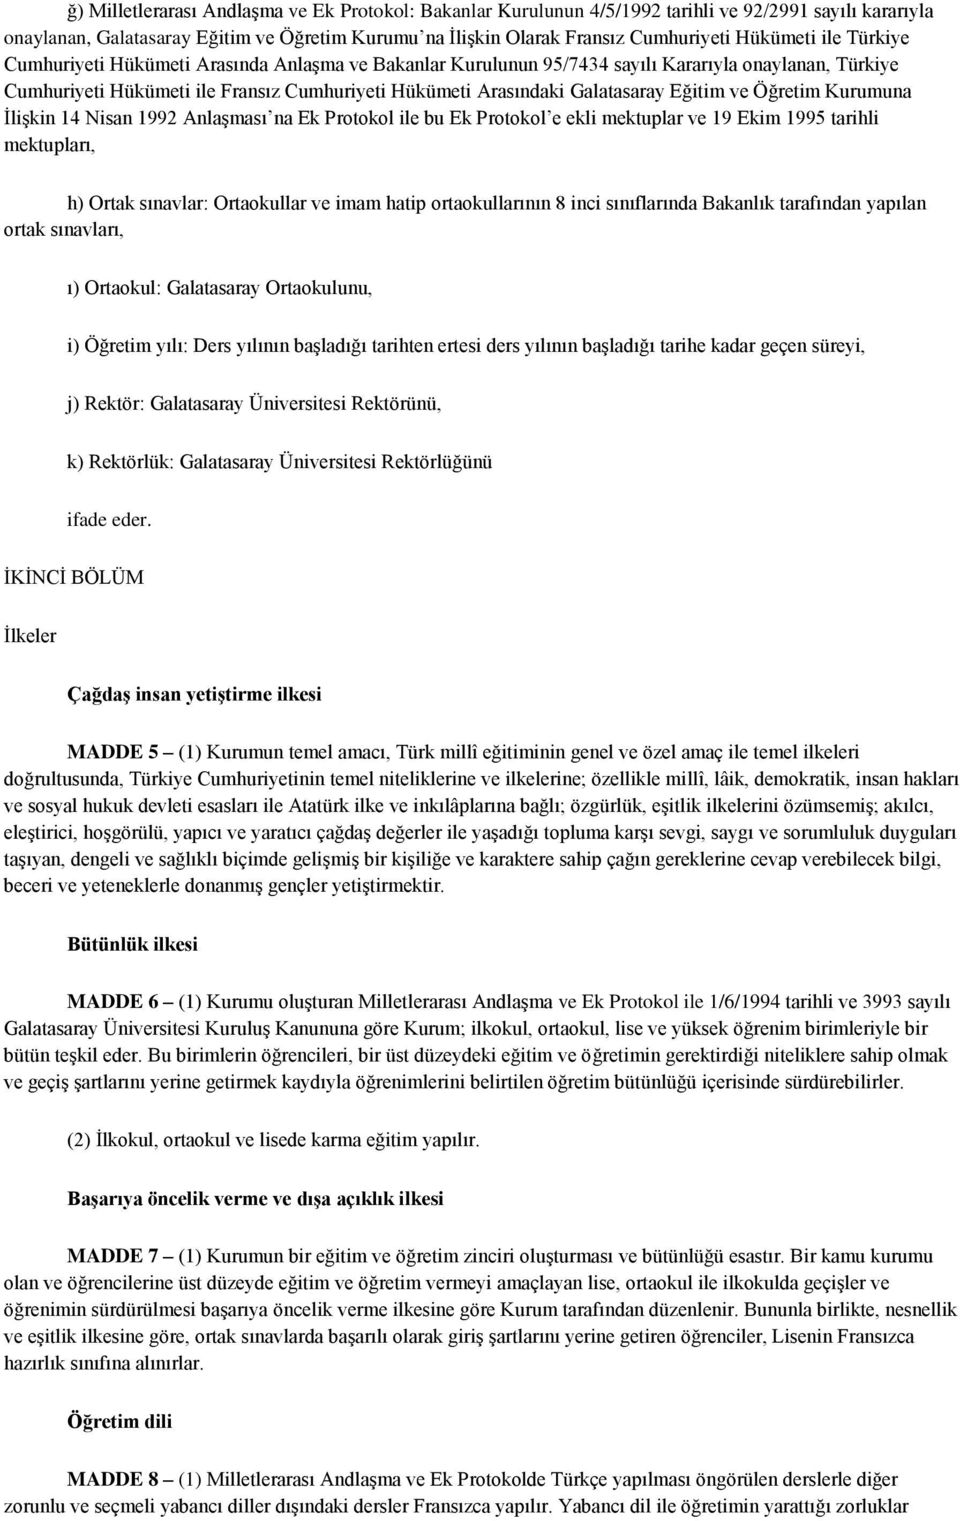 Galatasaray Eğitim ve Öğretim Kurumuna İlişkin 14 Nisan 1992 Anlaşması na Ek Protokol ile bu Ek Protokol e ekli mektuplar ve 19 Ekim 1995 tarihli mektupları, h) Ortak sınavlar: Ortaokullar ve imam